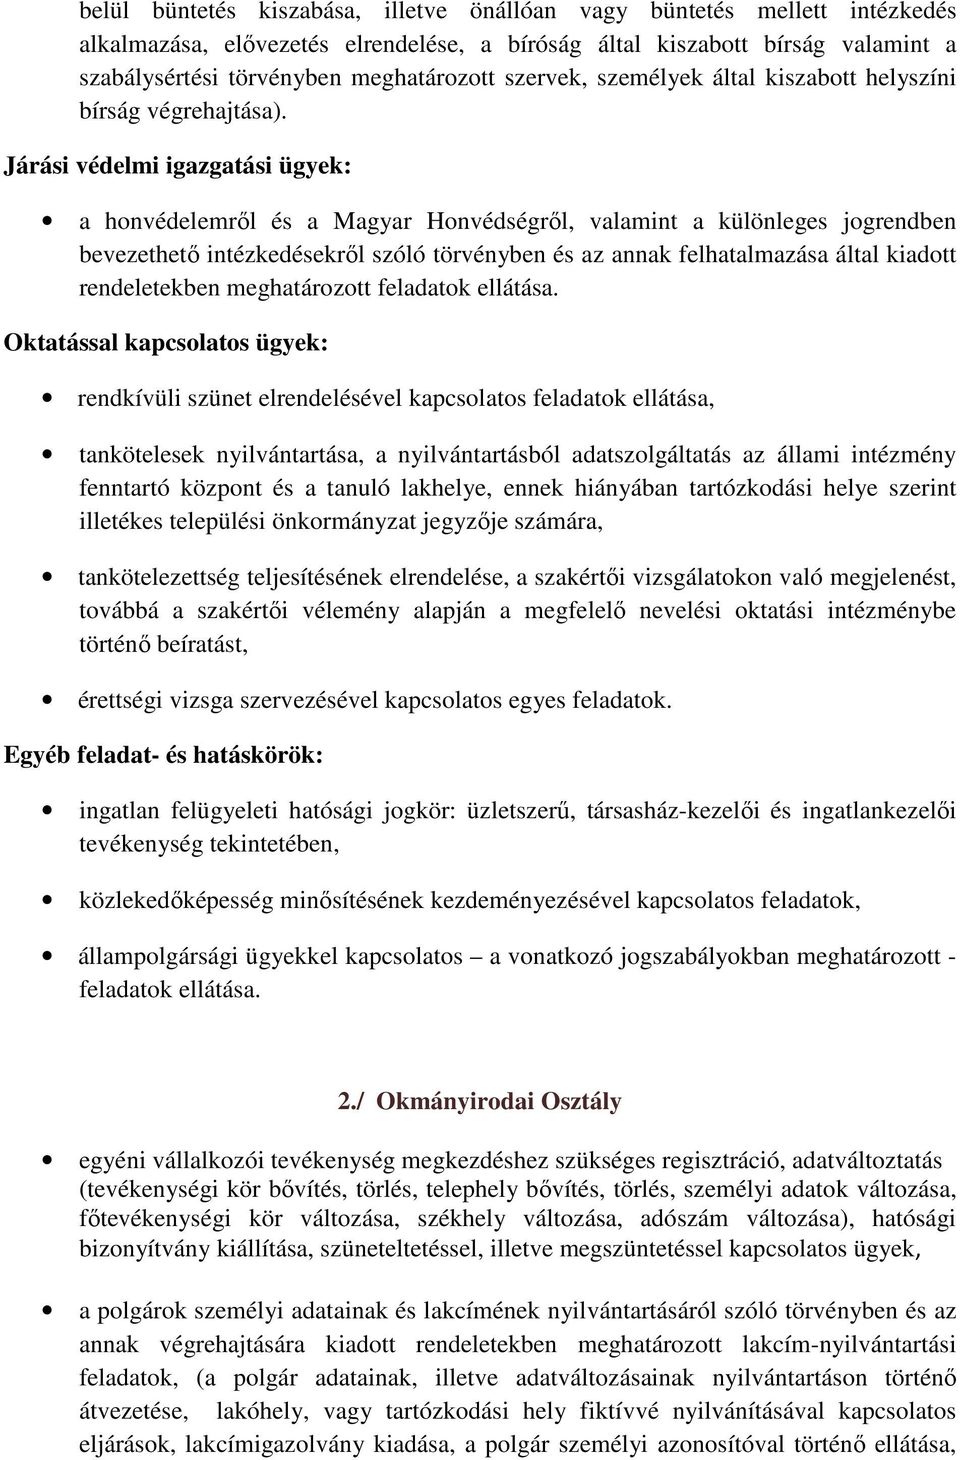 Járási védelmi igazgatási ügyek: a honvédelemről és a Magyar Honvédségről, valamint a különleges jogrendben bevezethető intézkedésekről szóló törvényben és az annak felhatalmazása által kiadott